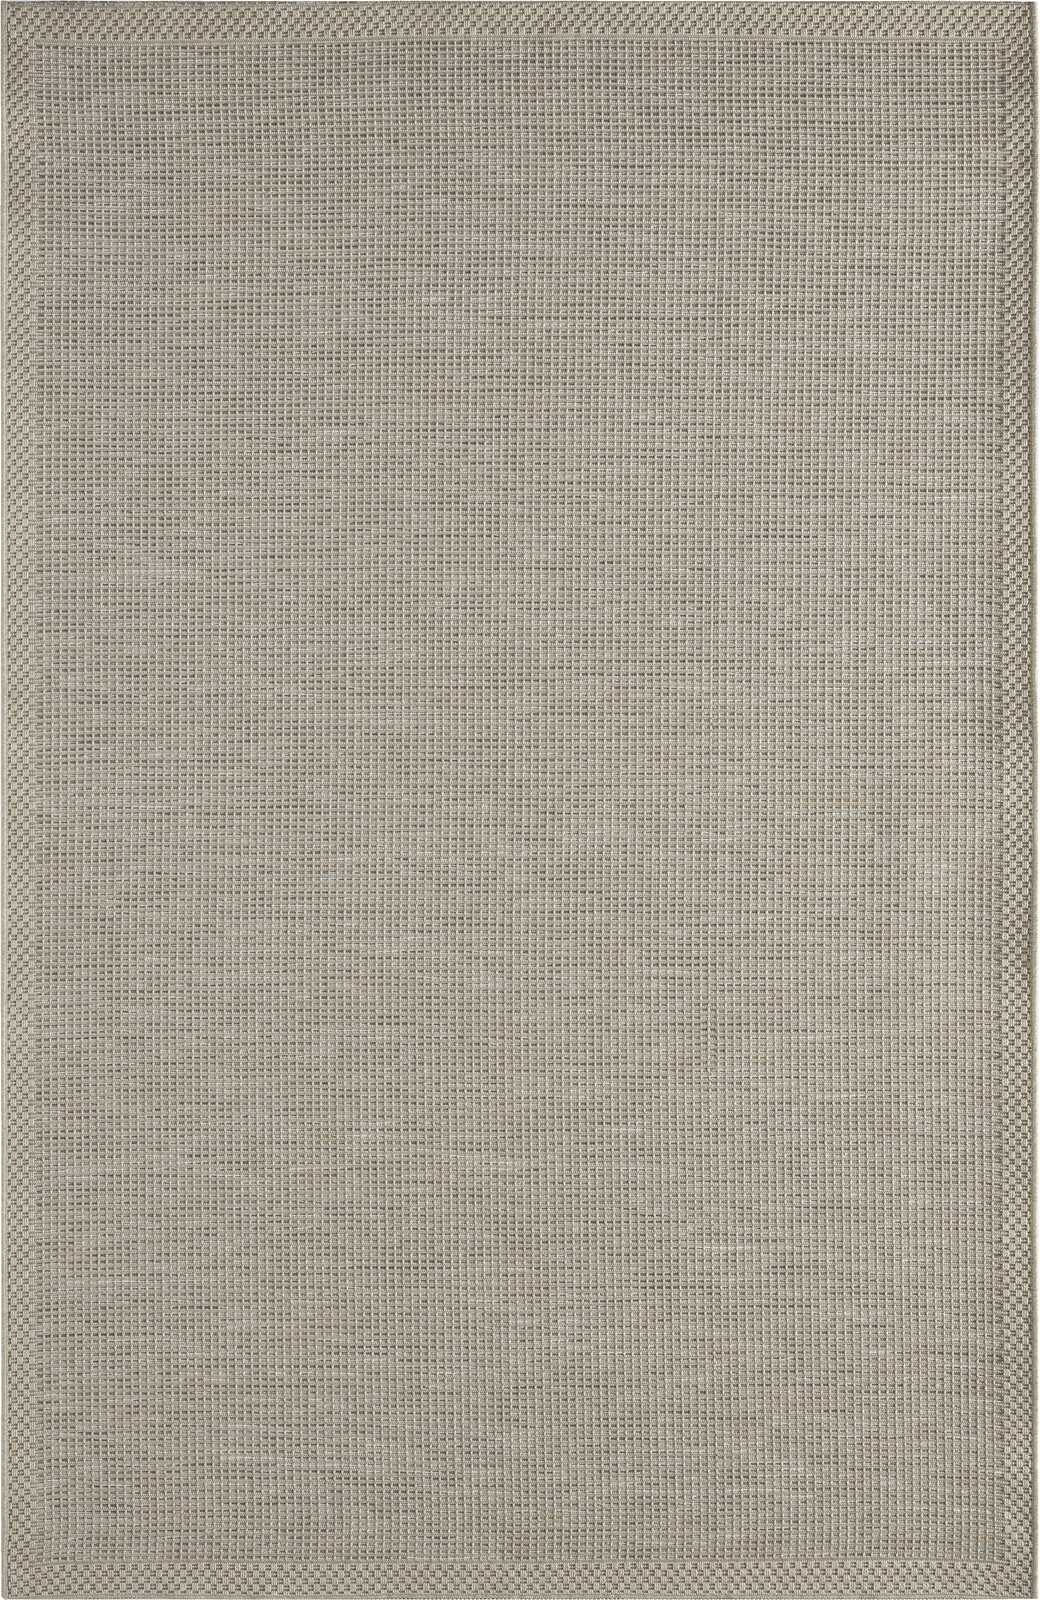             Tapis d'extérieur tissé plat en gris - 220 x 160 cm
        